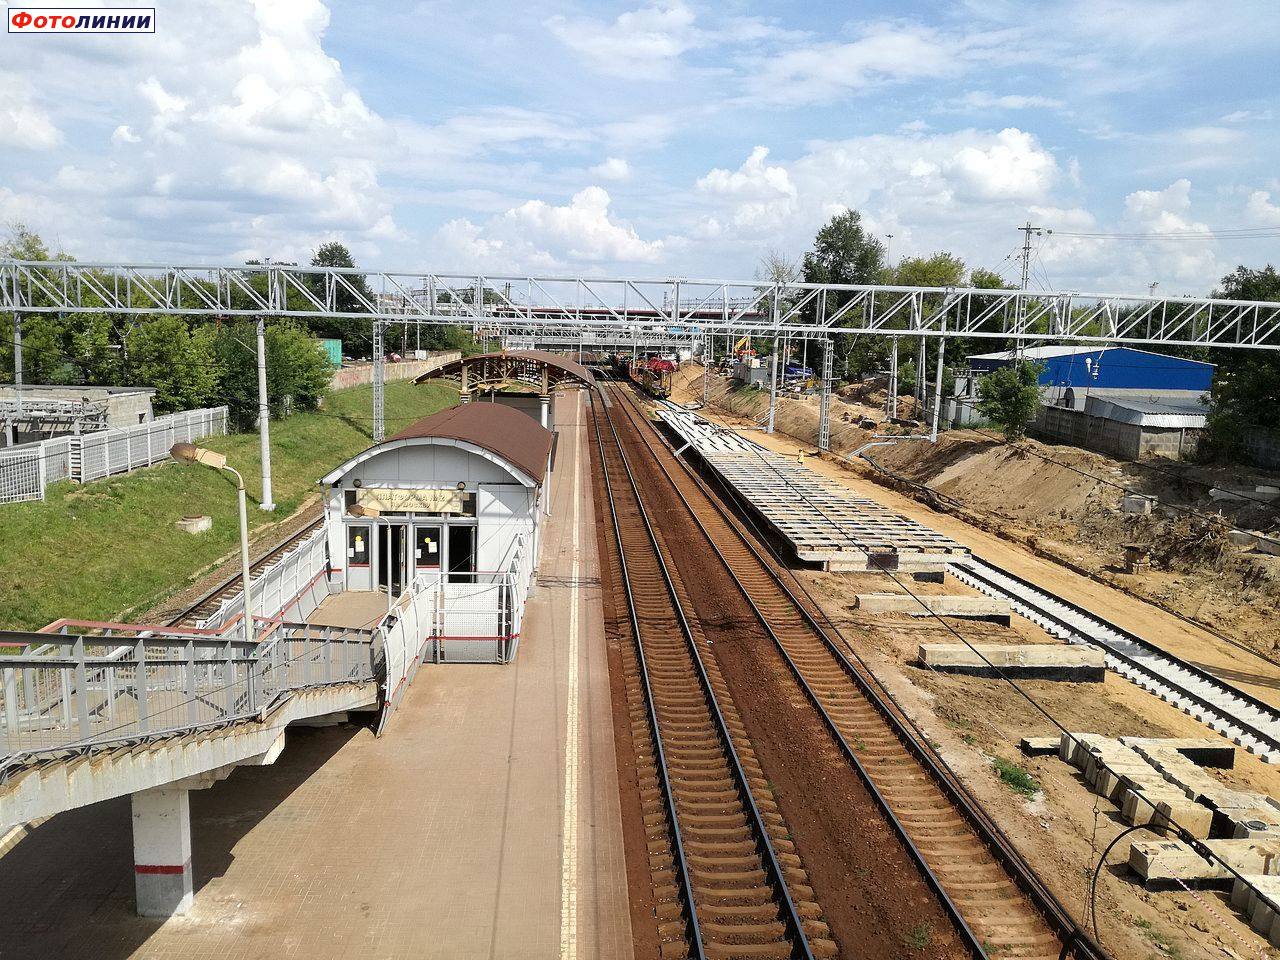 Реконструкция первой платформы, строительство четвёртого пути и турникетный павильон на второй платформе, вид в чётном направлении